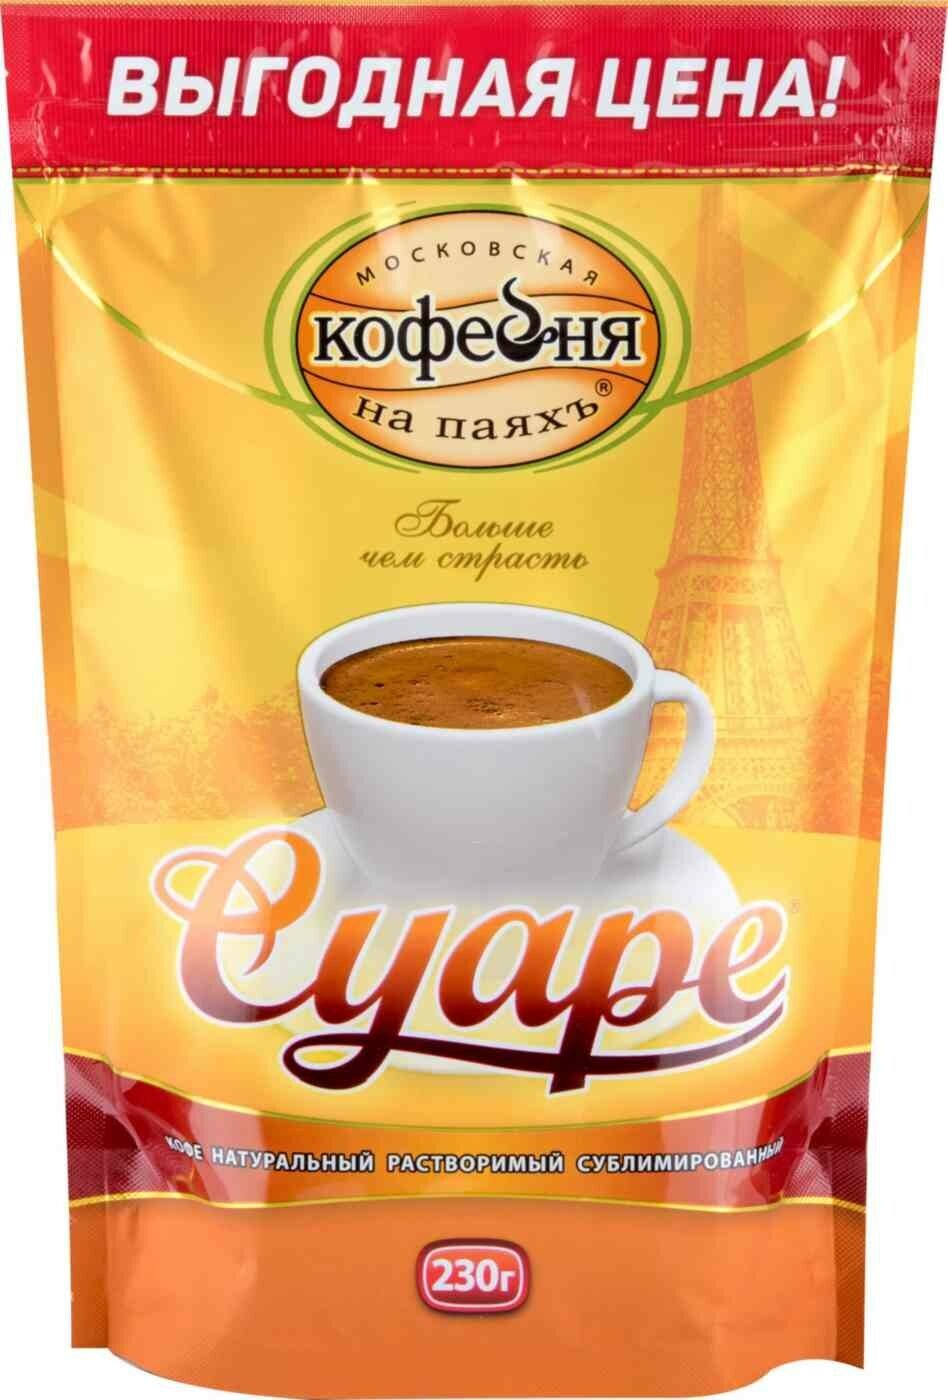 Кофе растворимый Московская кофейня на паяхъ Суаре